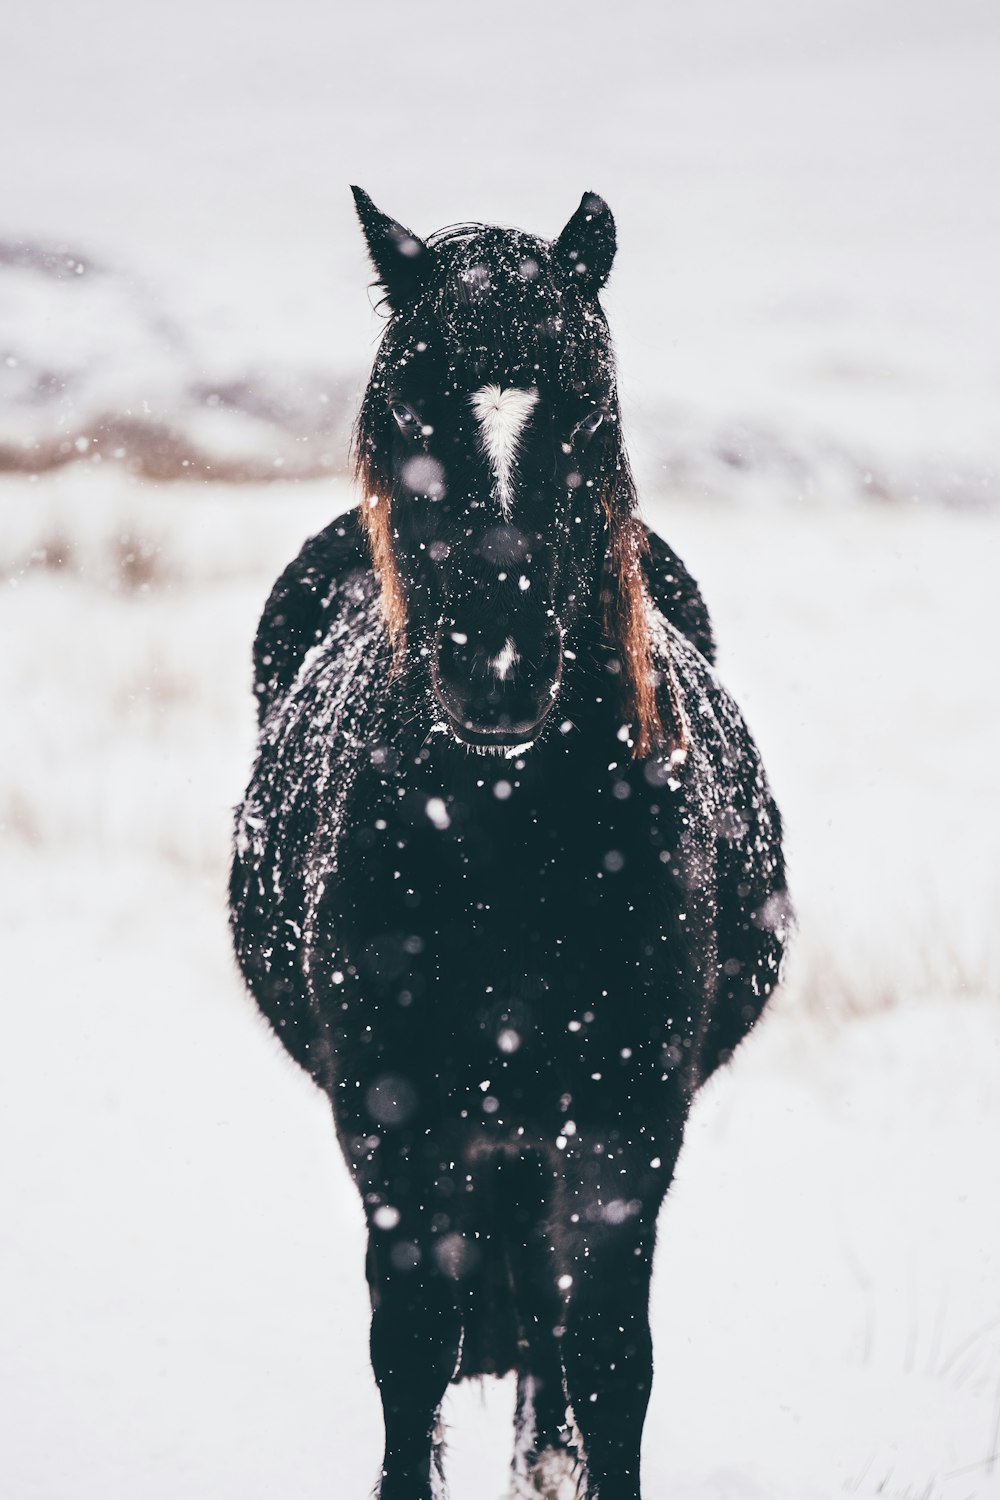 Fotografia de foco raso de cavalo preto em pé em terra nevada durante o dia